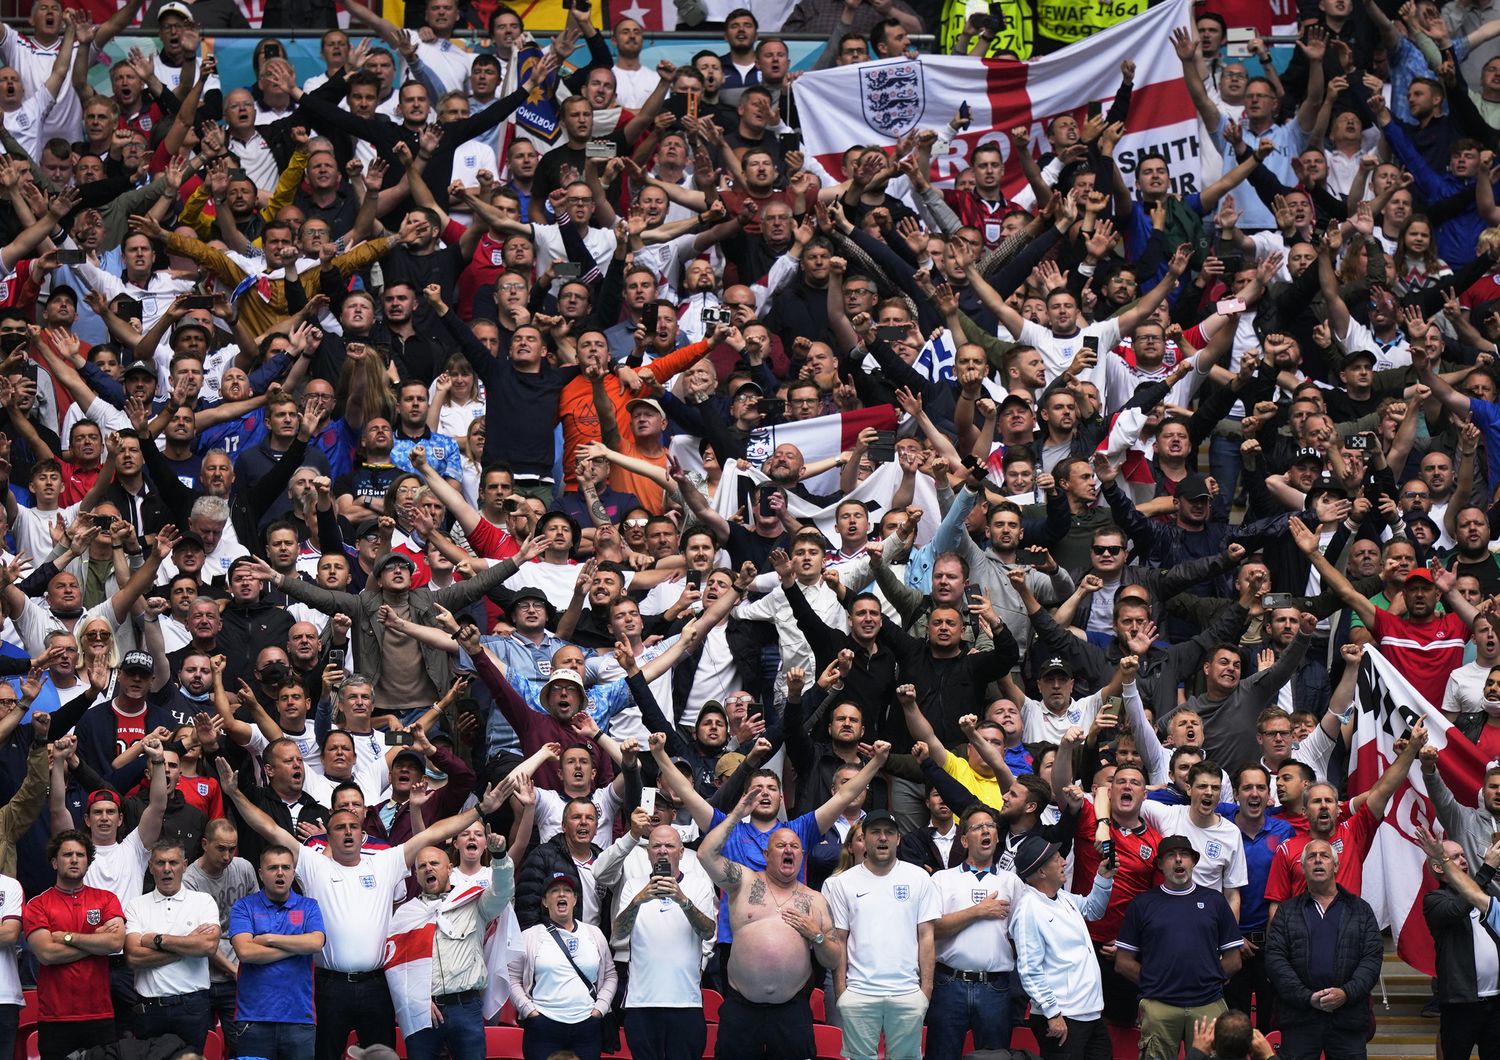 Tifosi nello stadio di Wembley durante la partita Inghilterra-Germania